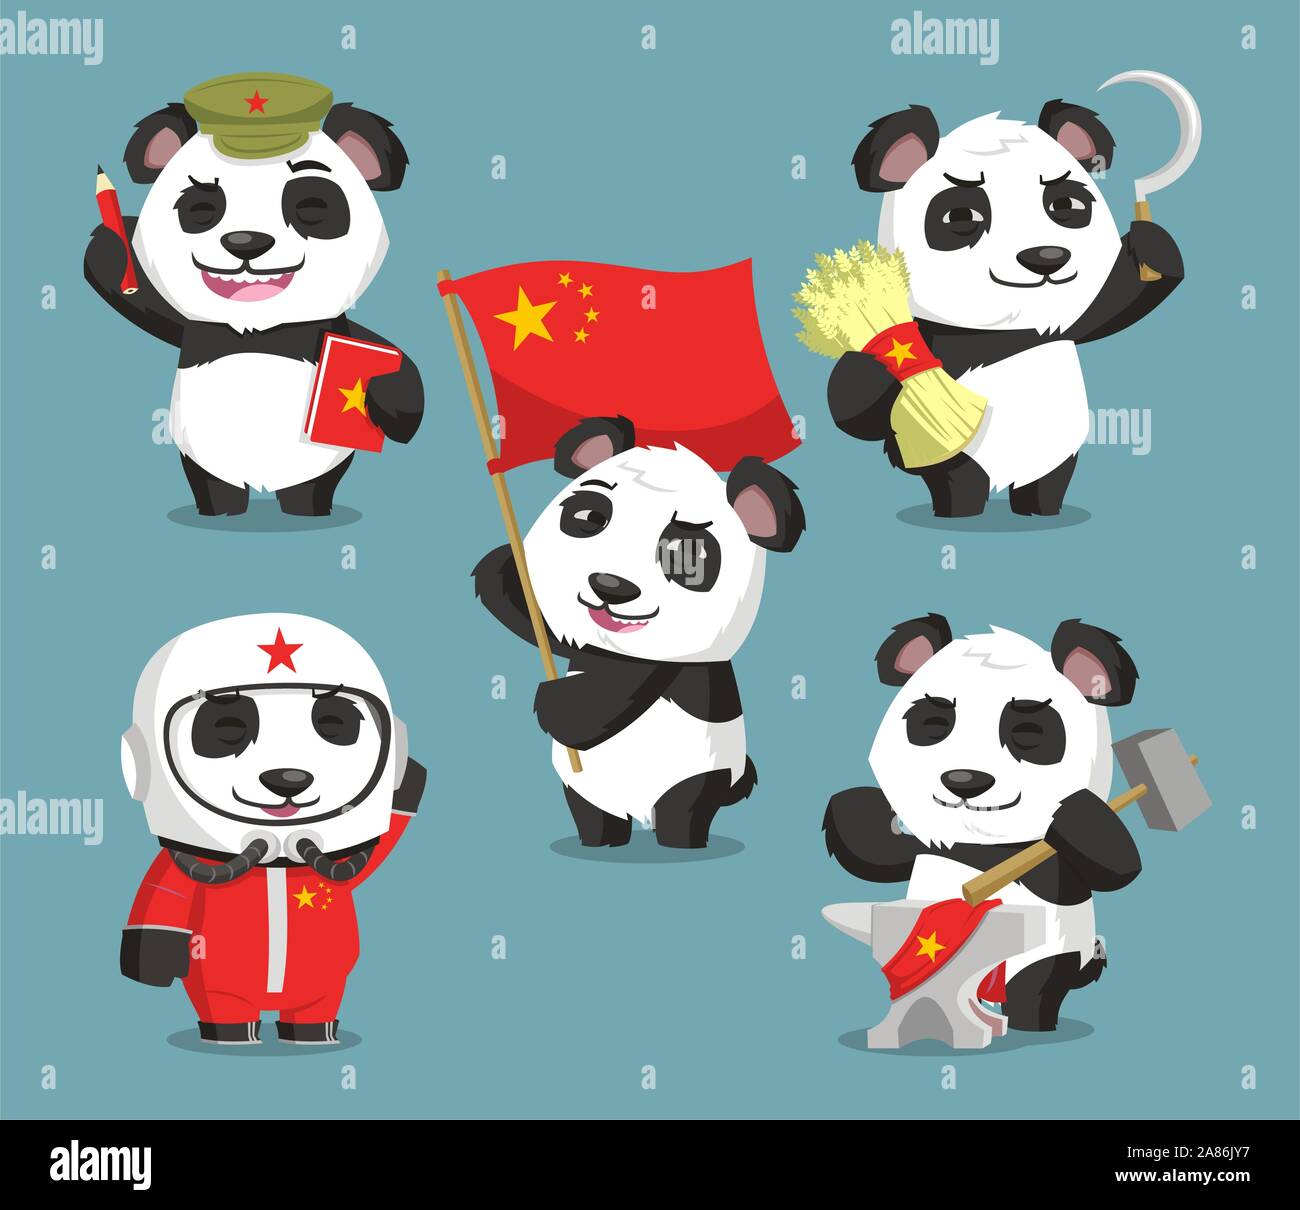 Communist Chinese panda cartoons Stock Vector